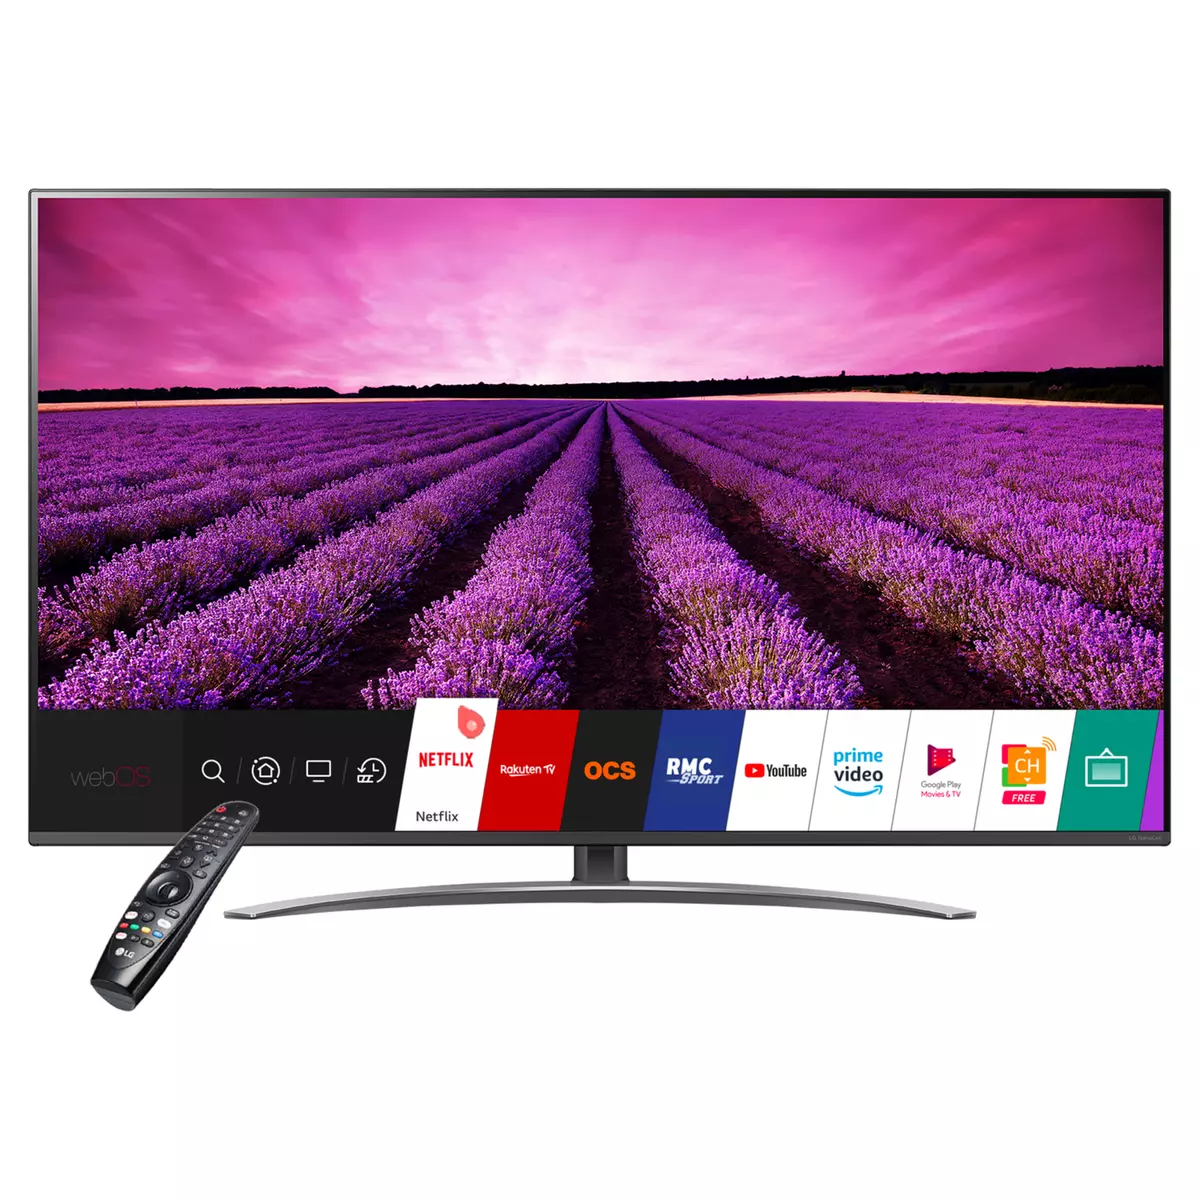 LG 65SM8200PLA TV LED 4K UHD 164 cm Smart TV